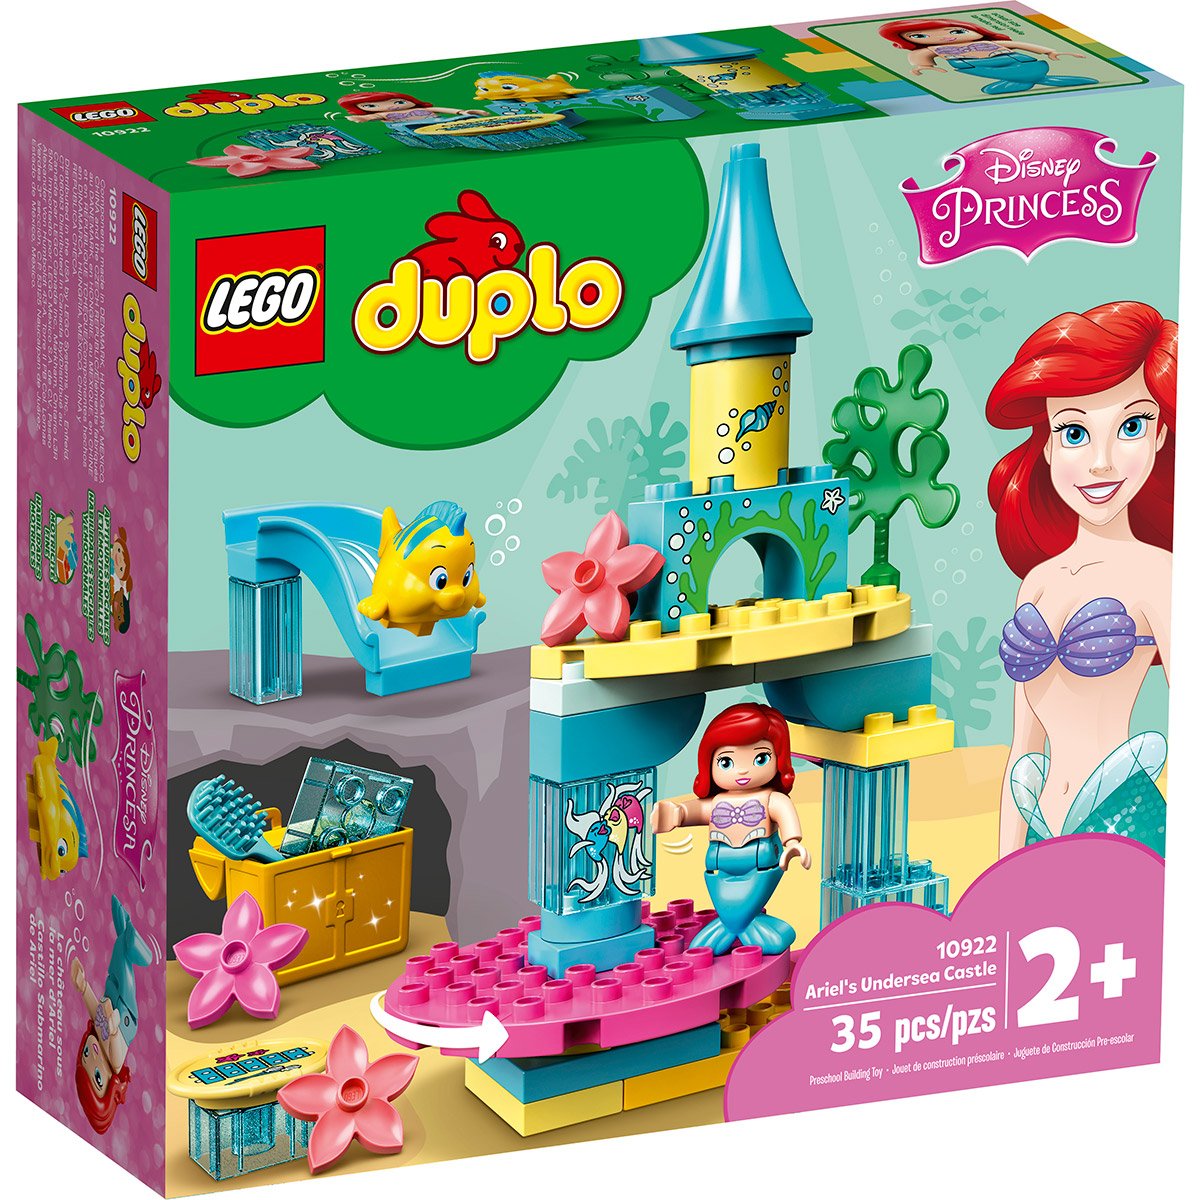 Princesse de Disney LEGO 10922 Duplo Jouet Château sous la mer d’Ariel avec poupée de La Petite Sirène Ariel pour Les Tout-Petits de 2 à 5 Ans 